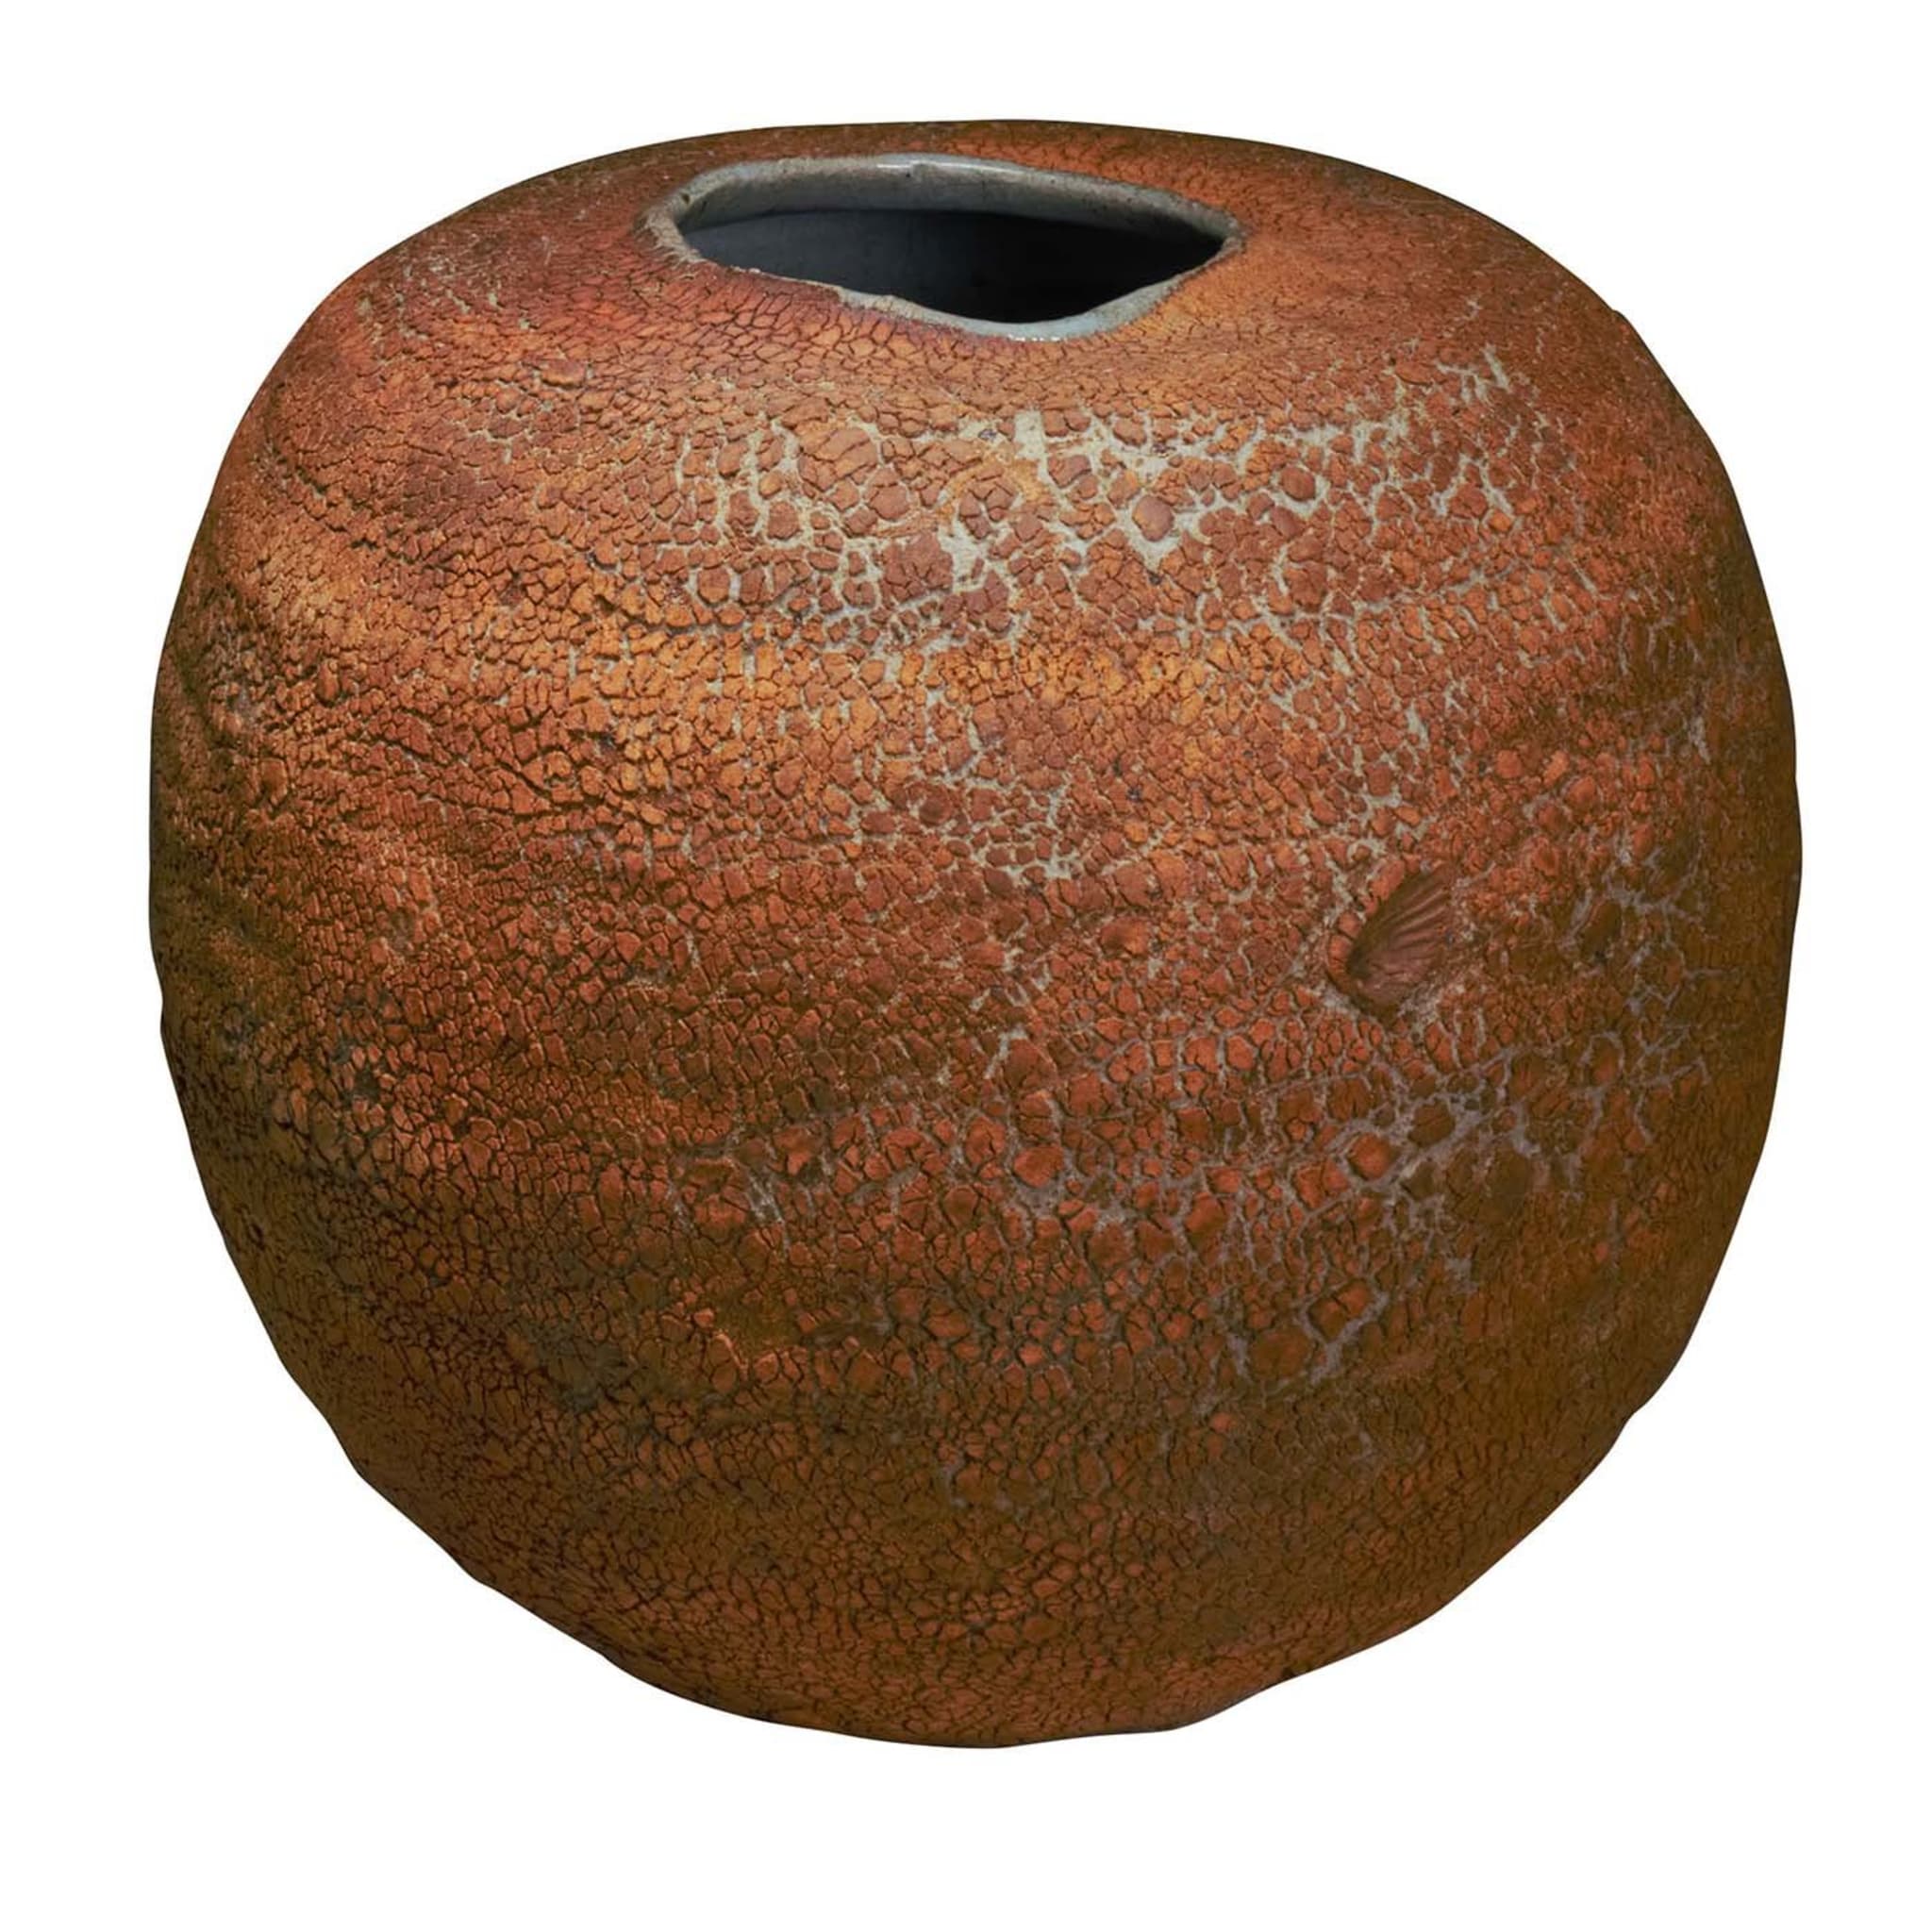 Vase de table Toscana Earth avec impression de coquillages - Vue principale